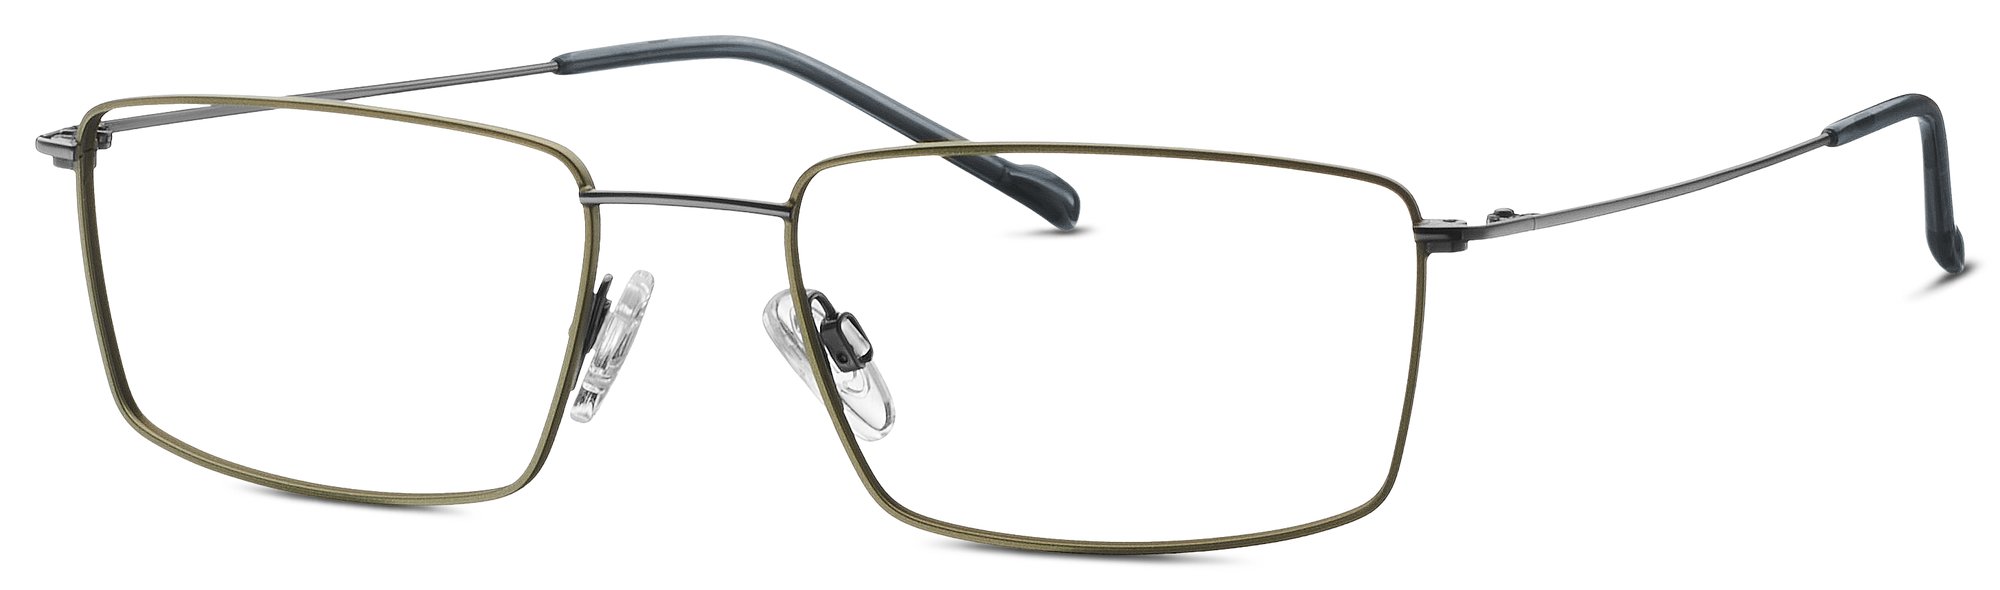 Das Bild zeigt die Korrektionsbrille 820907 34 von der Marke Titanflex in grau.